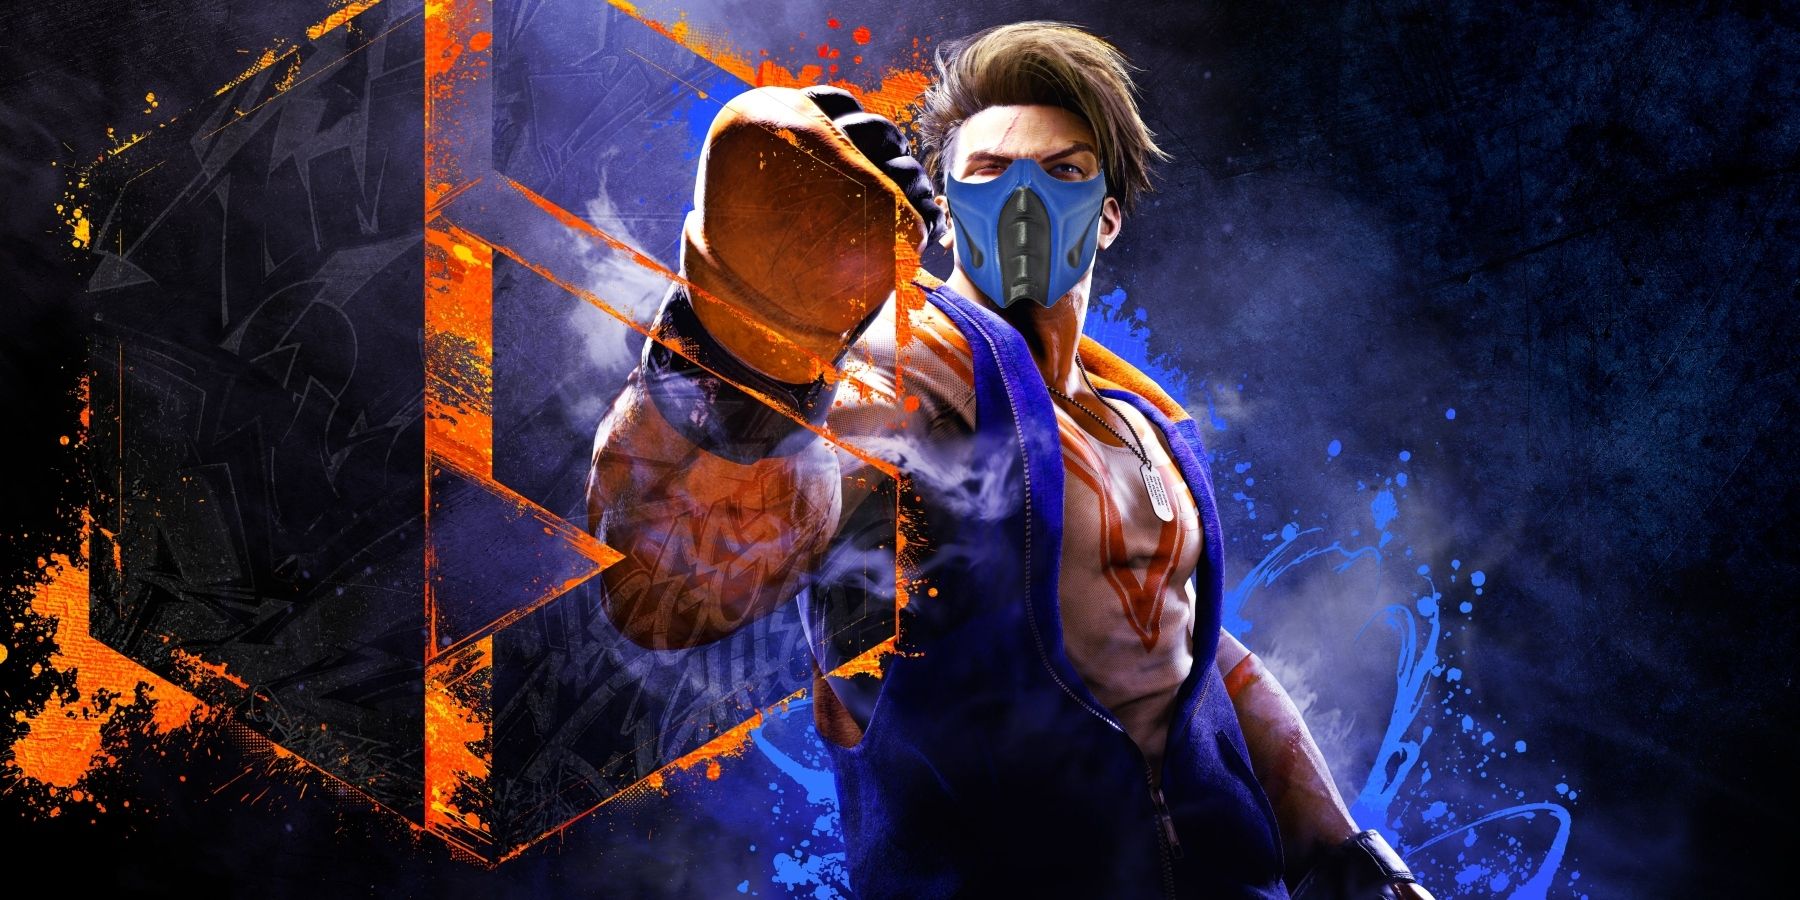 Mortal Kombat vs Street Fighter: site escolhe o melhor entre os